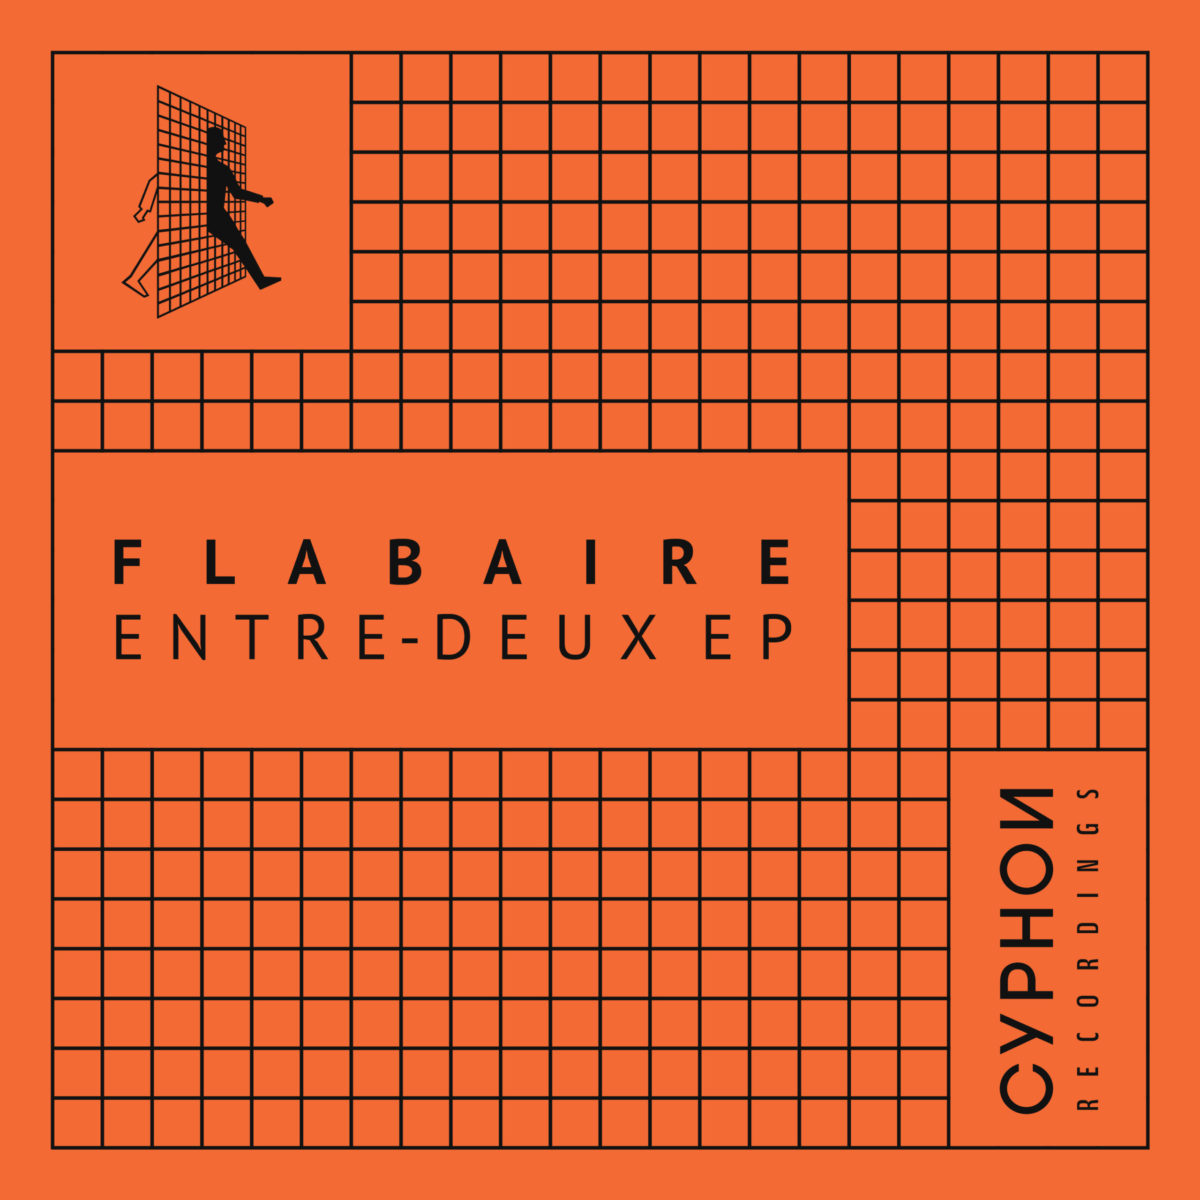 Entre Deux EP par Flabaire